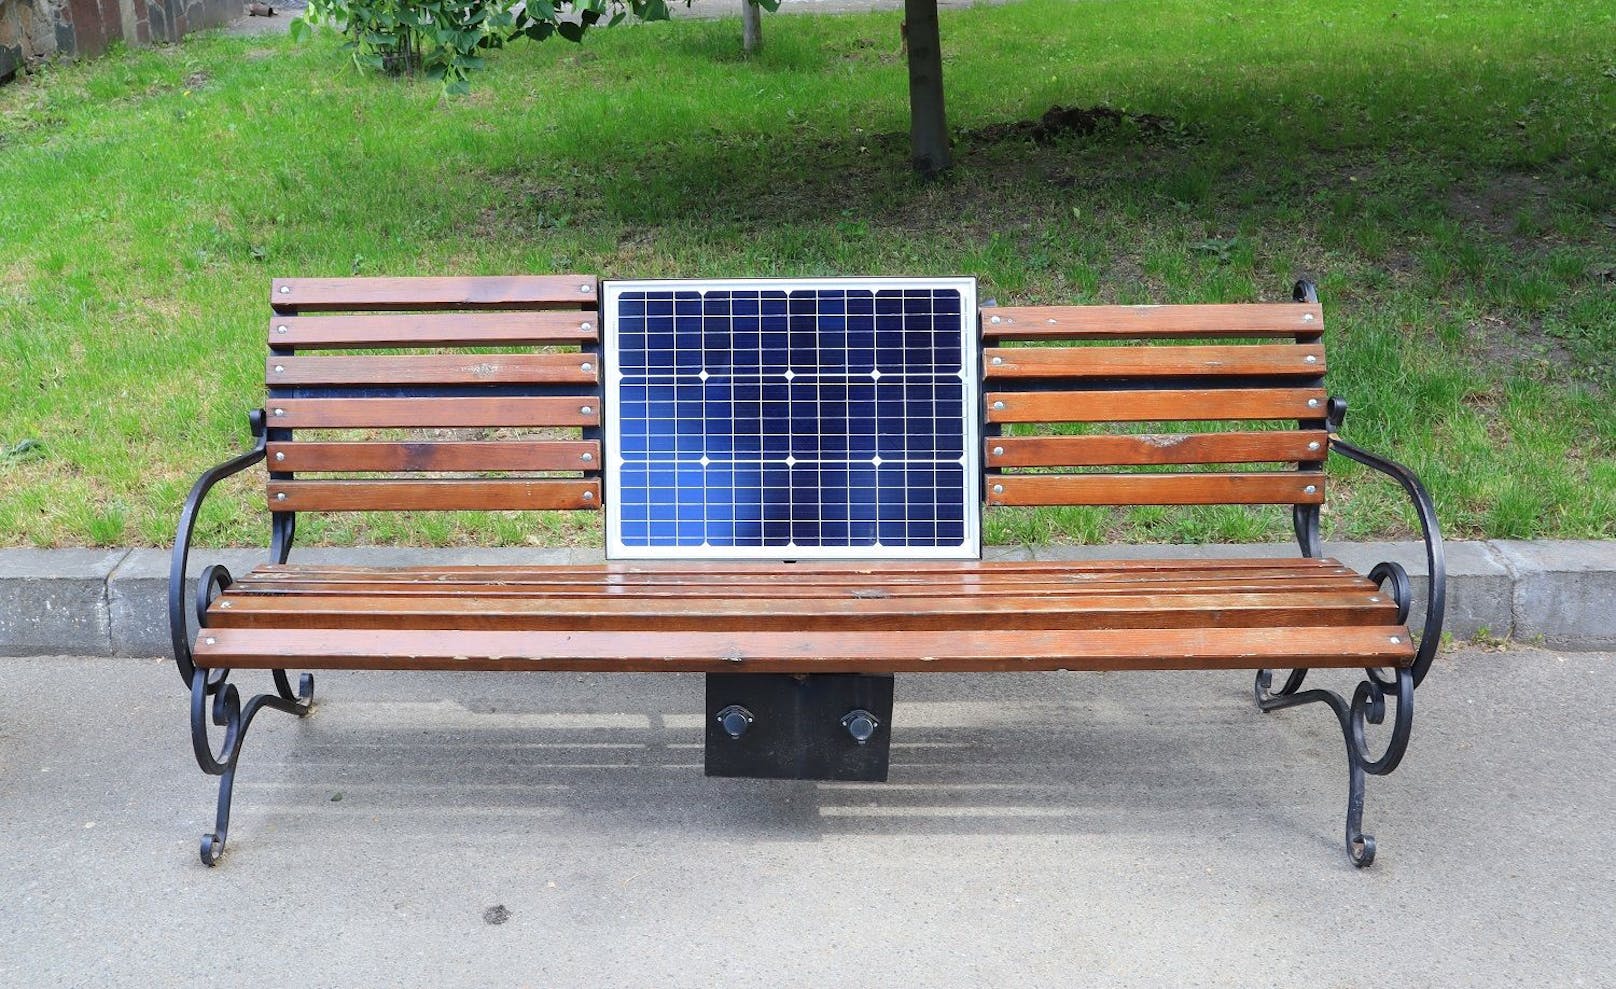 Möbel, die Sonnenenergie einfangen: Hier ist eine Sitzbank mit Photovoltaikzellen ausgestattet, die ihren eigenen Strom erzeugt.